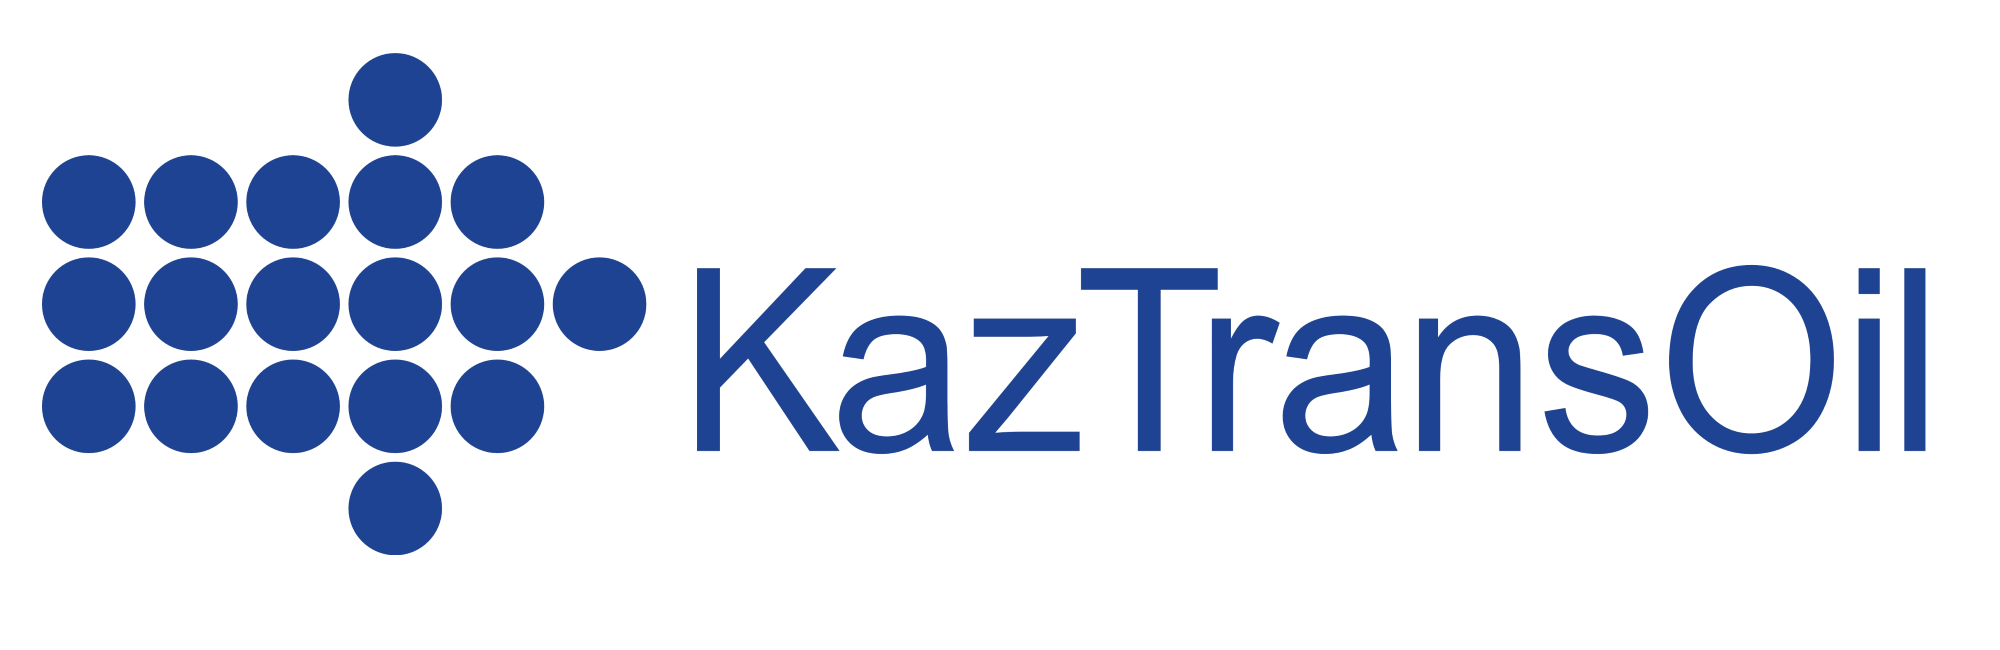 KazTransOil logo, logotype